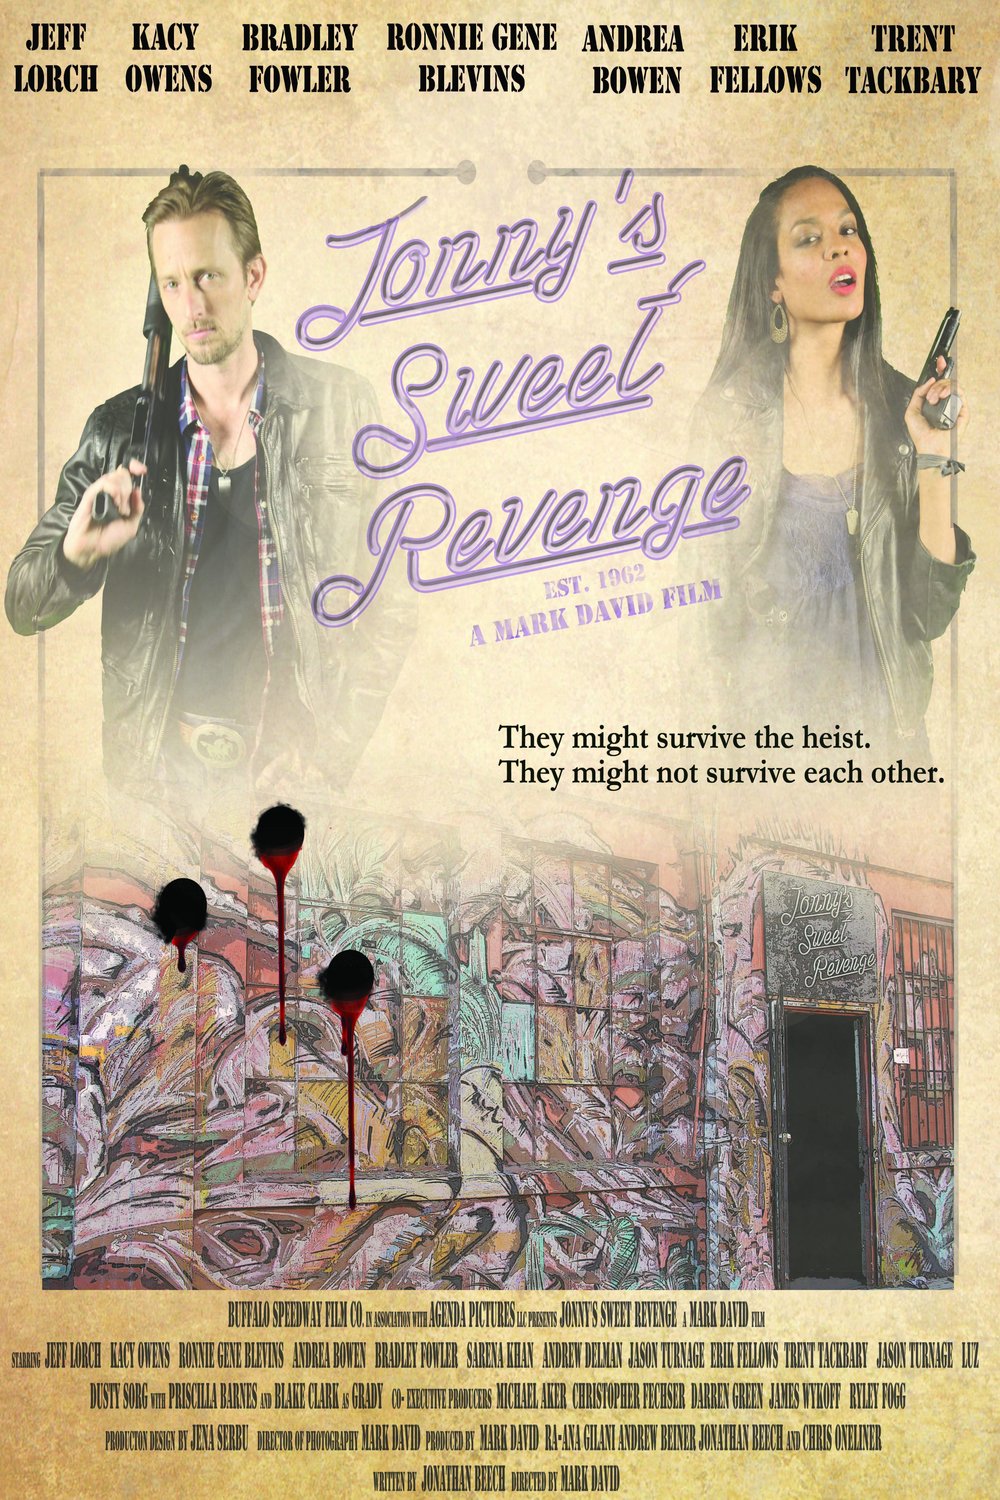 Poster of the movie Jonny's Sweet Revenge